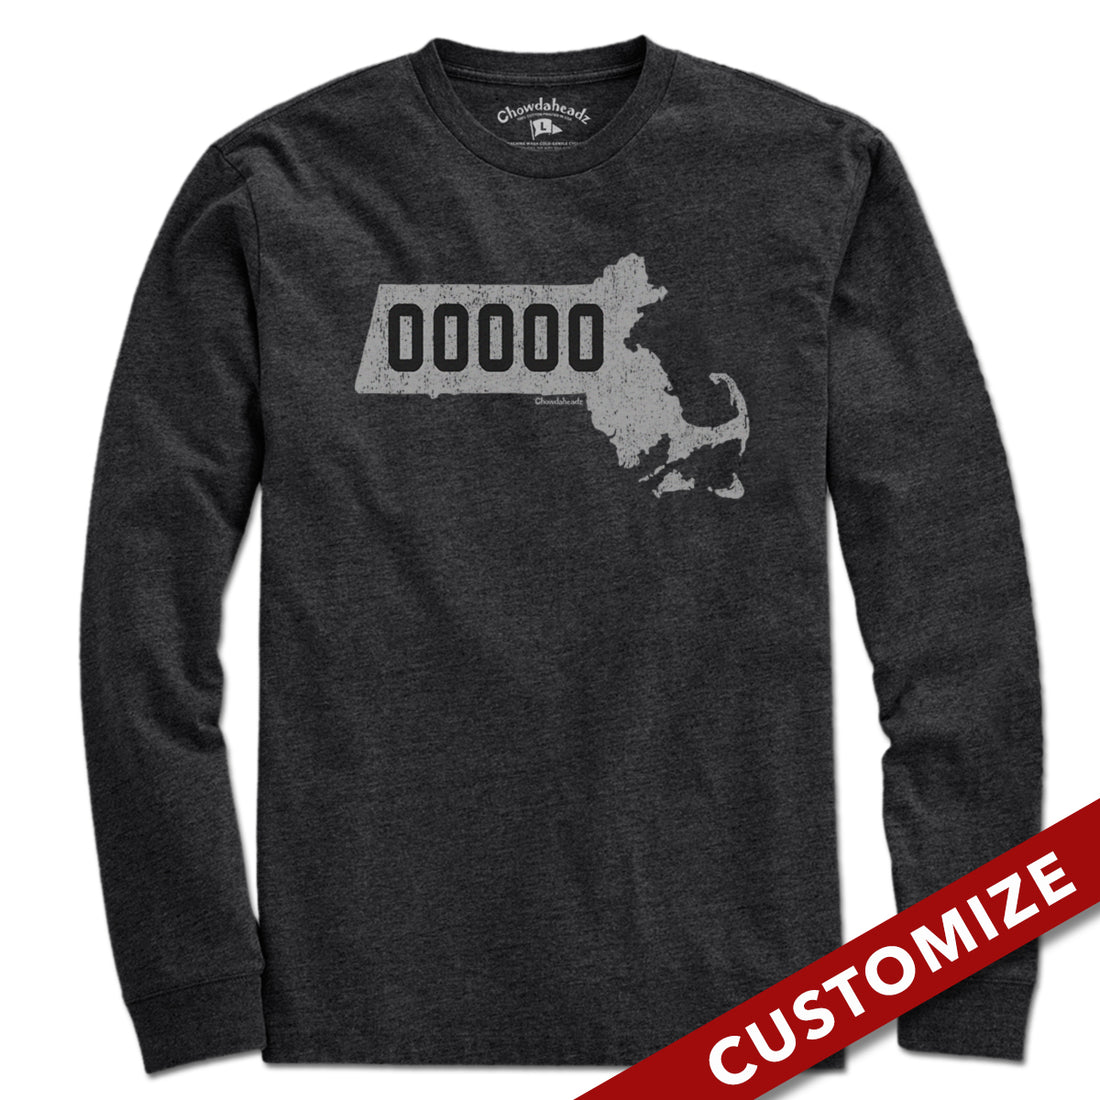 Custom Massachusetts Zip Code T-Shirt - Chowdaheadz